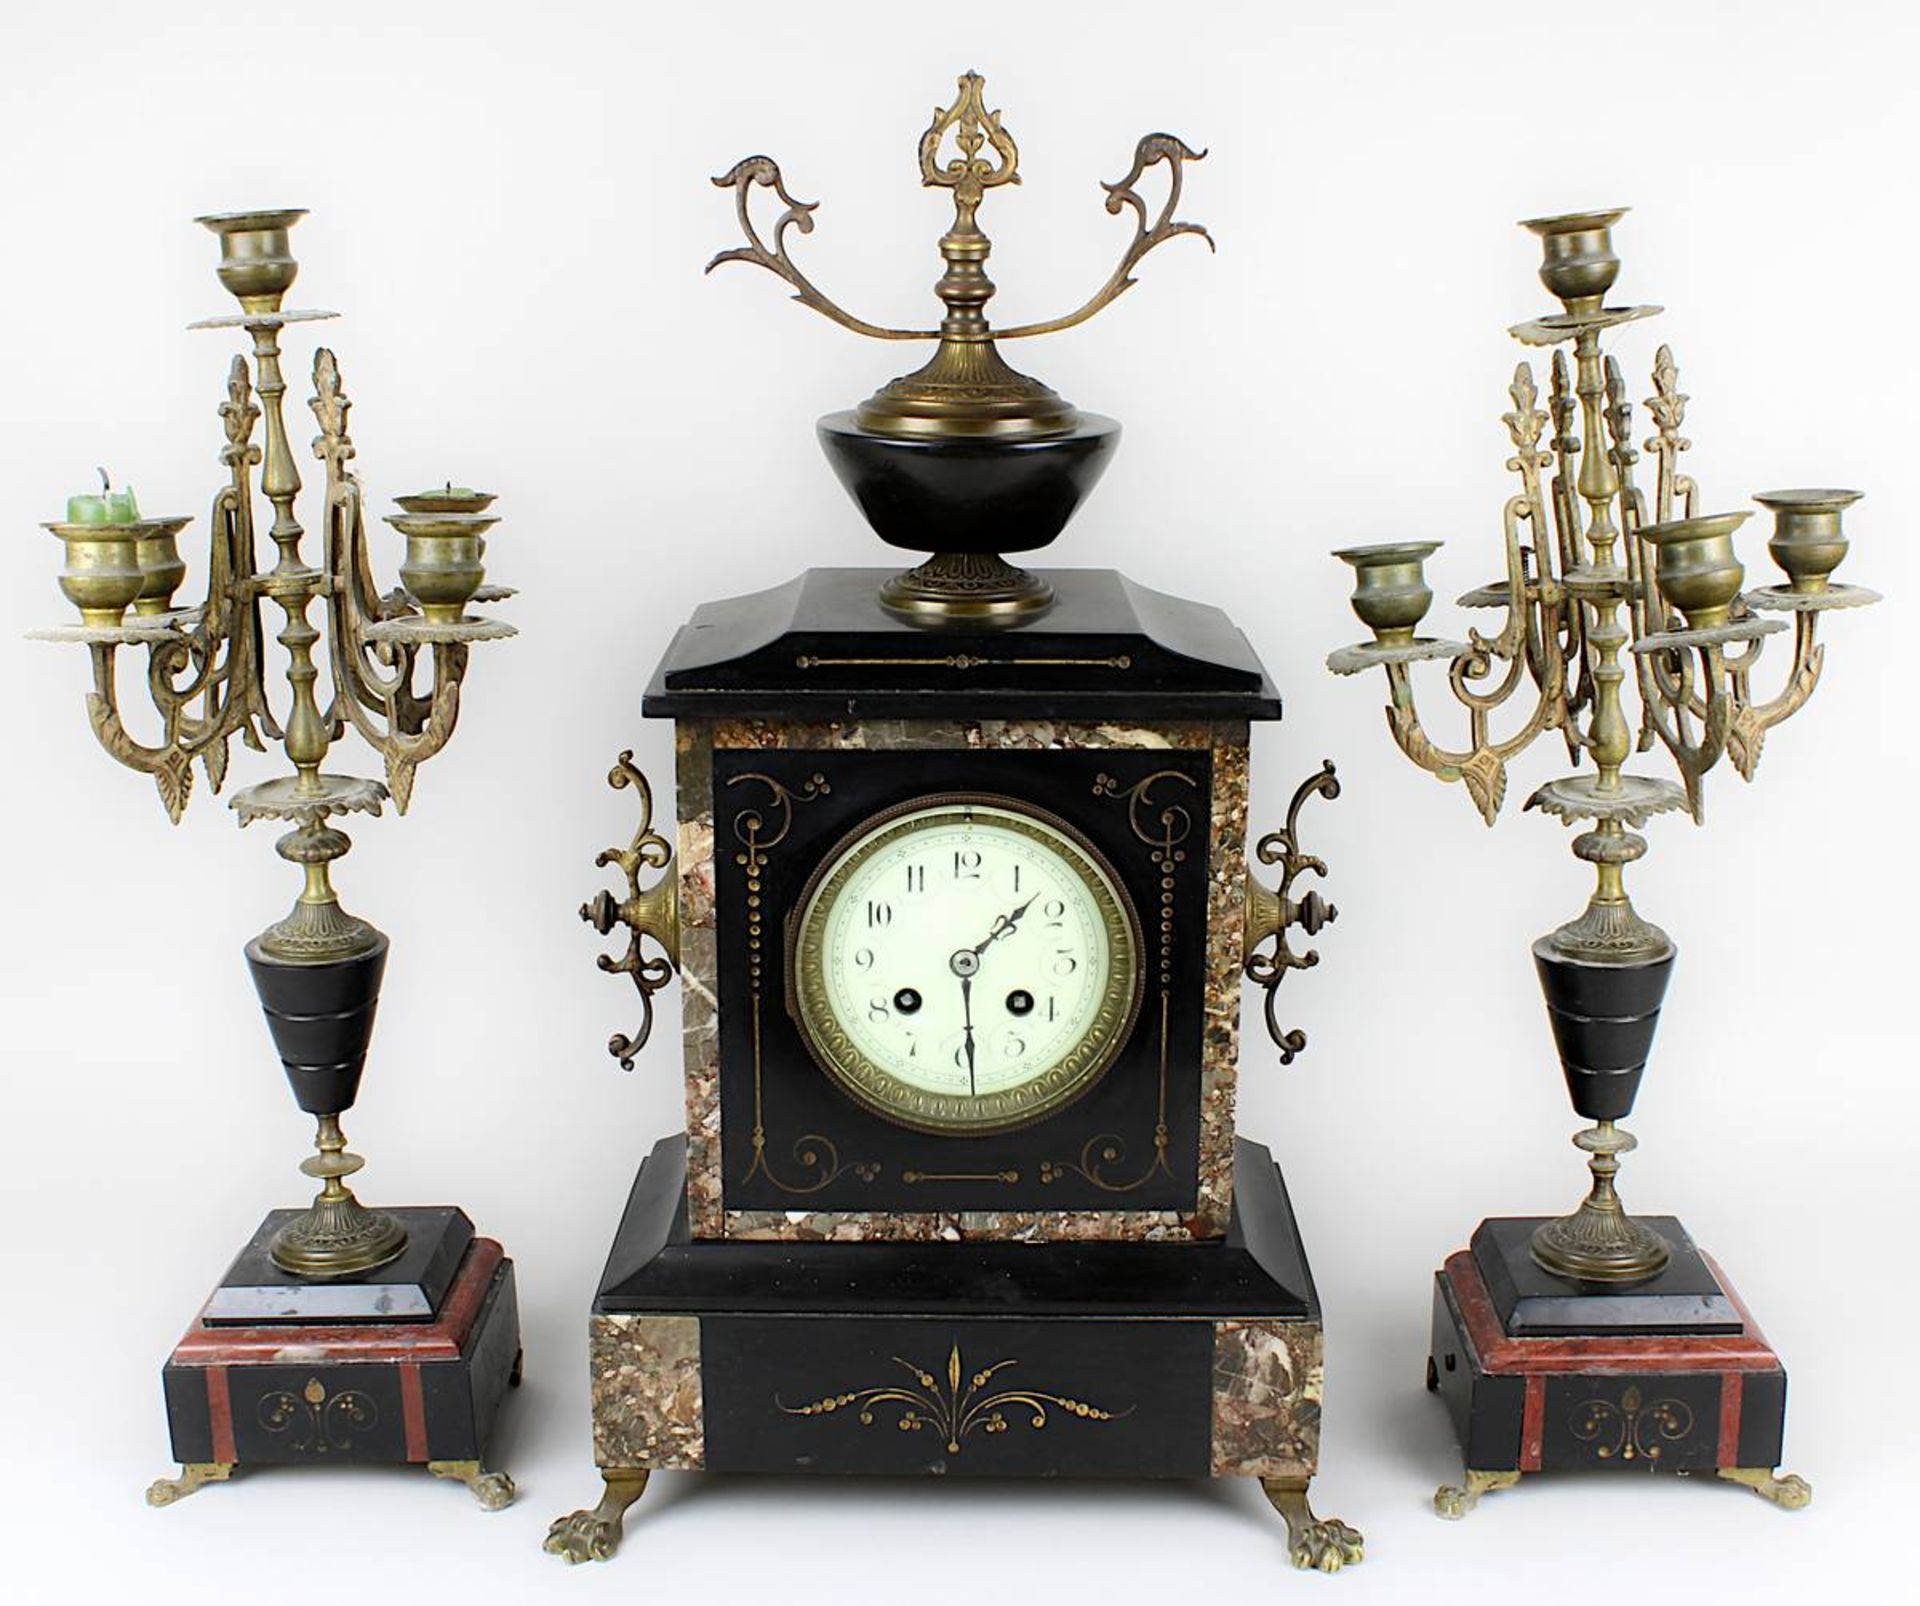 Uhrengarnitur Frankreich 2. H. 19. Jh., aus rotem Marmor, schwarzem Schiefer und Messing, Uhr mit